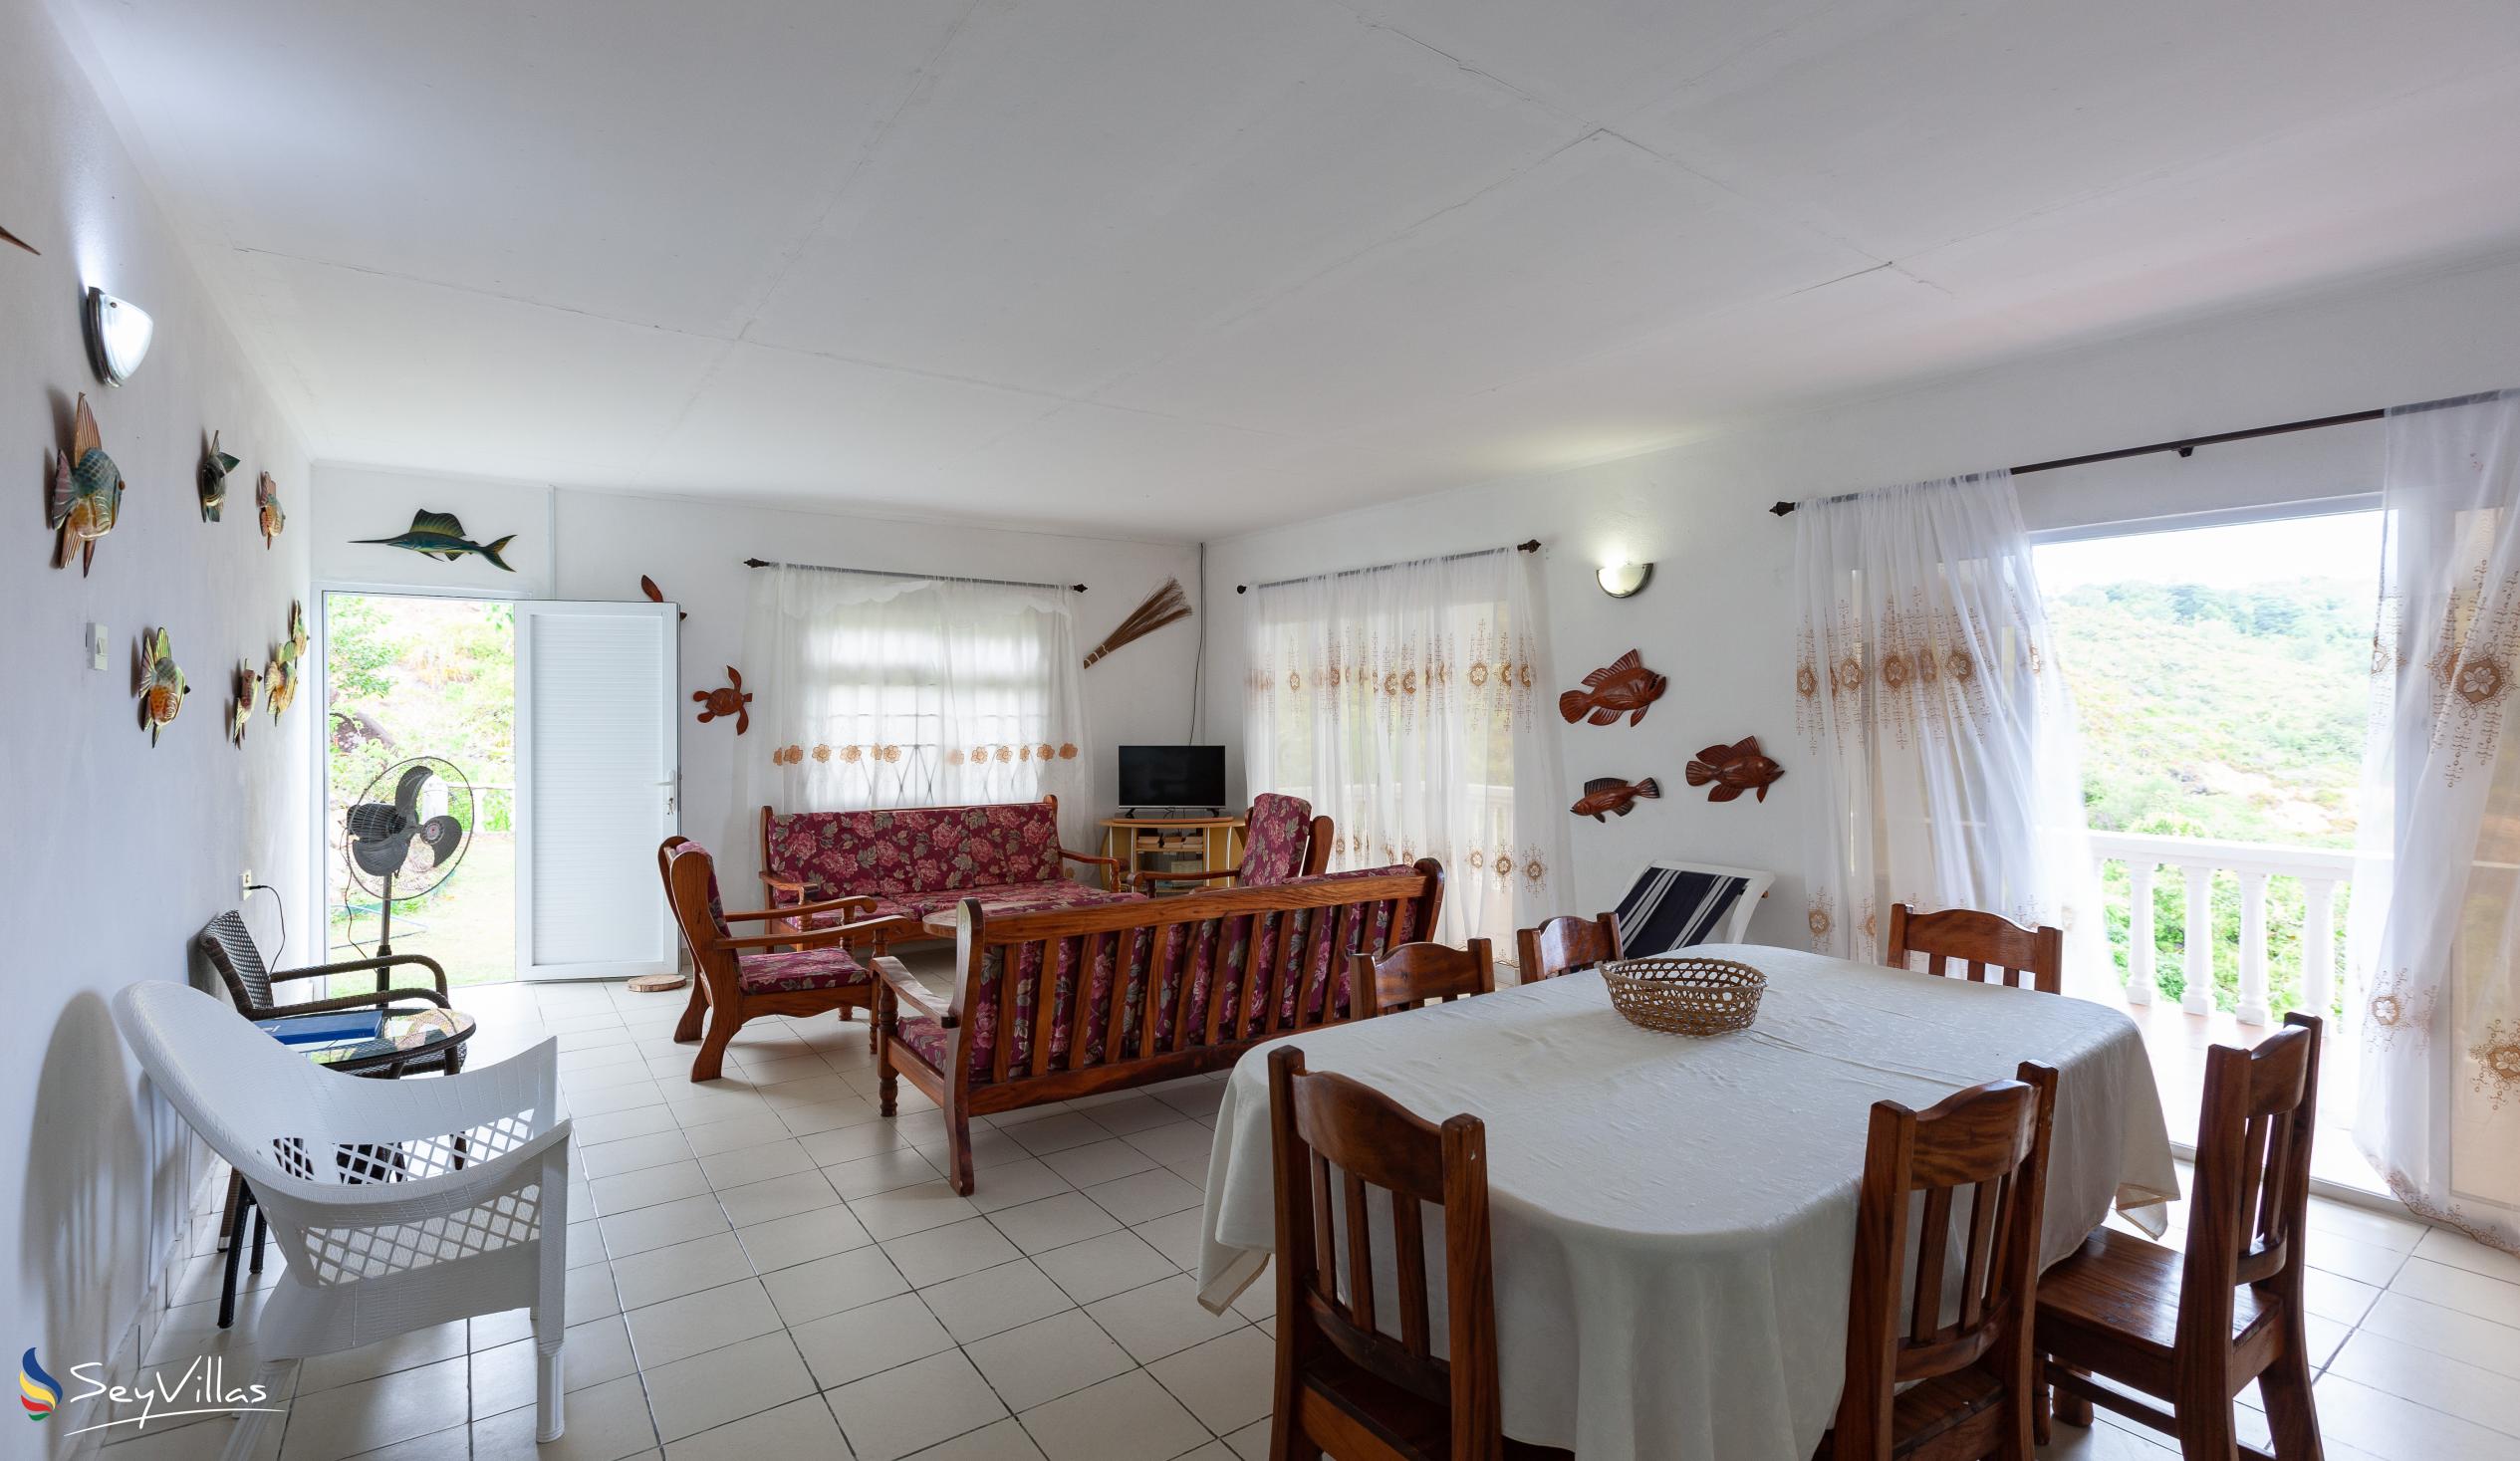 Foto 22: Maison du Soleil - Innenbereich - Praslin (Seychellen)